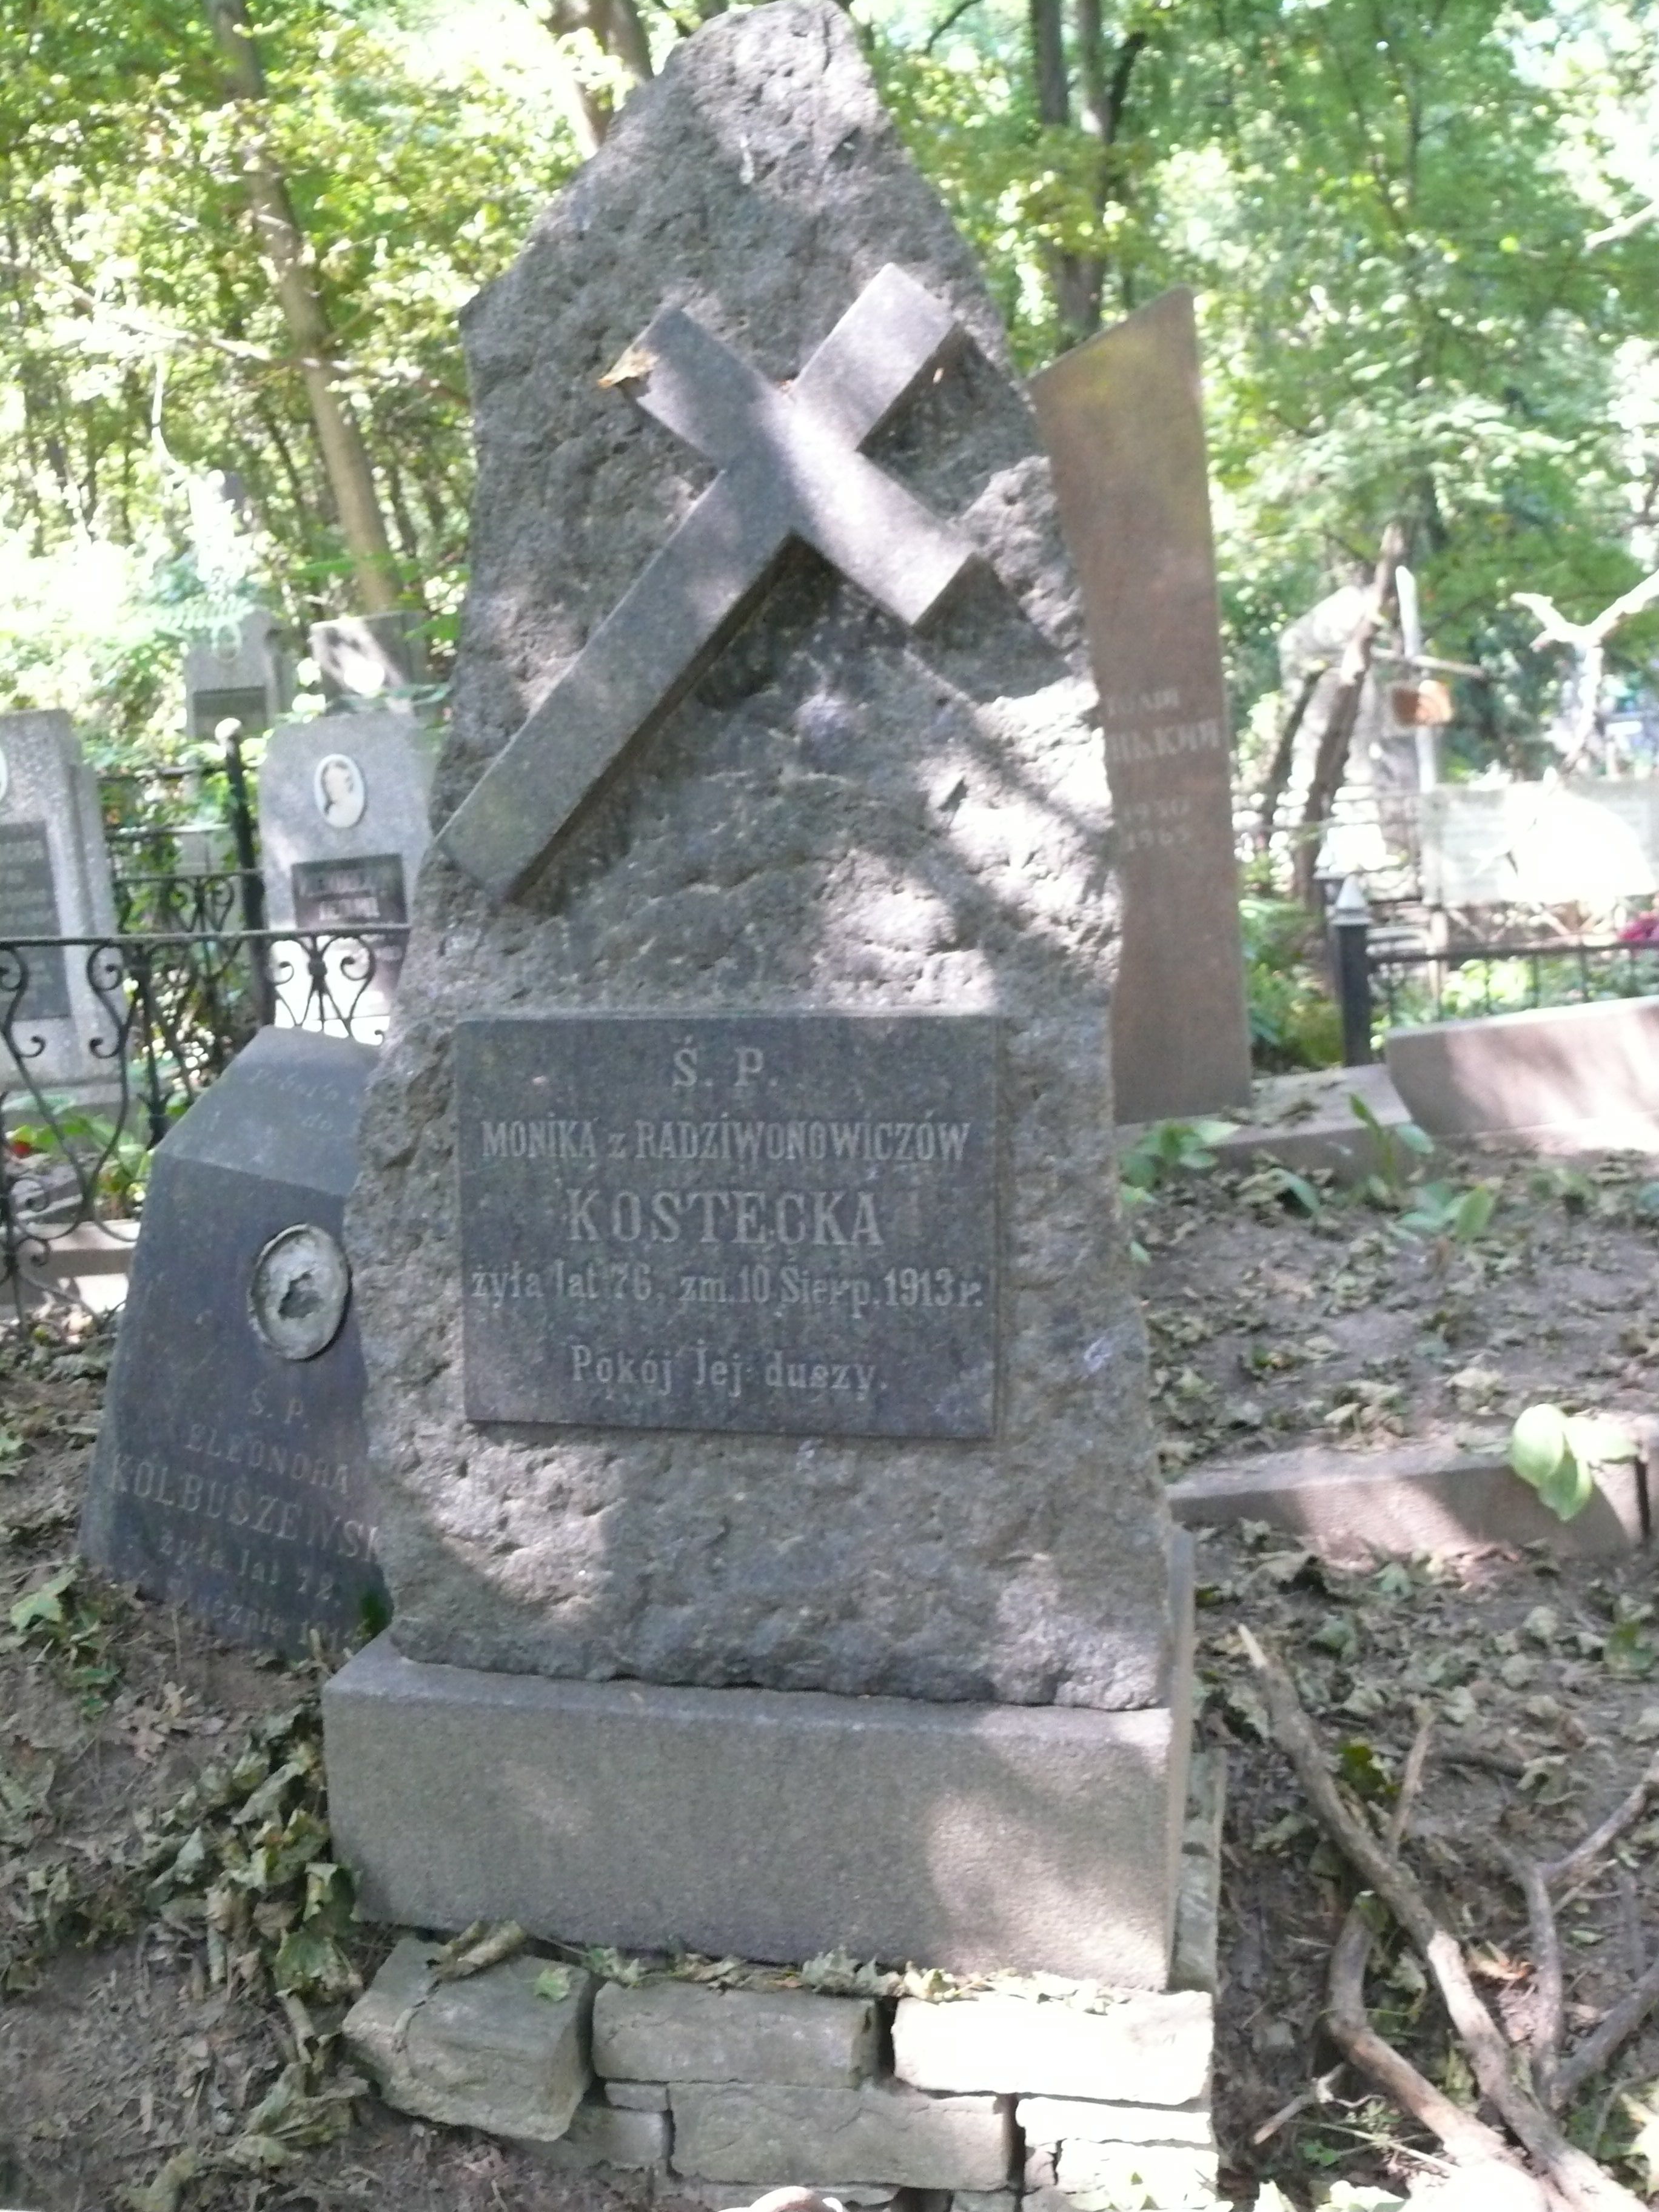 Tombstone of Monika Kostecka